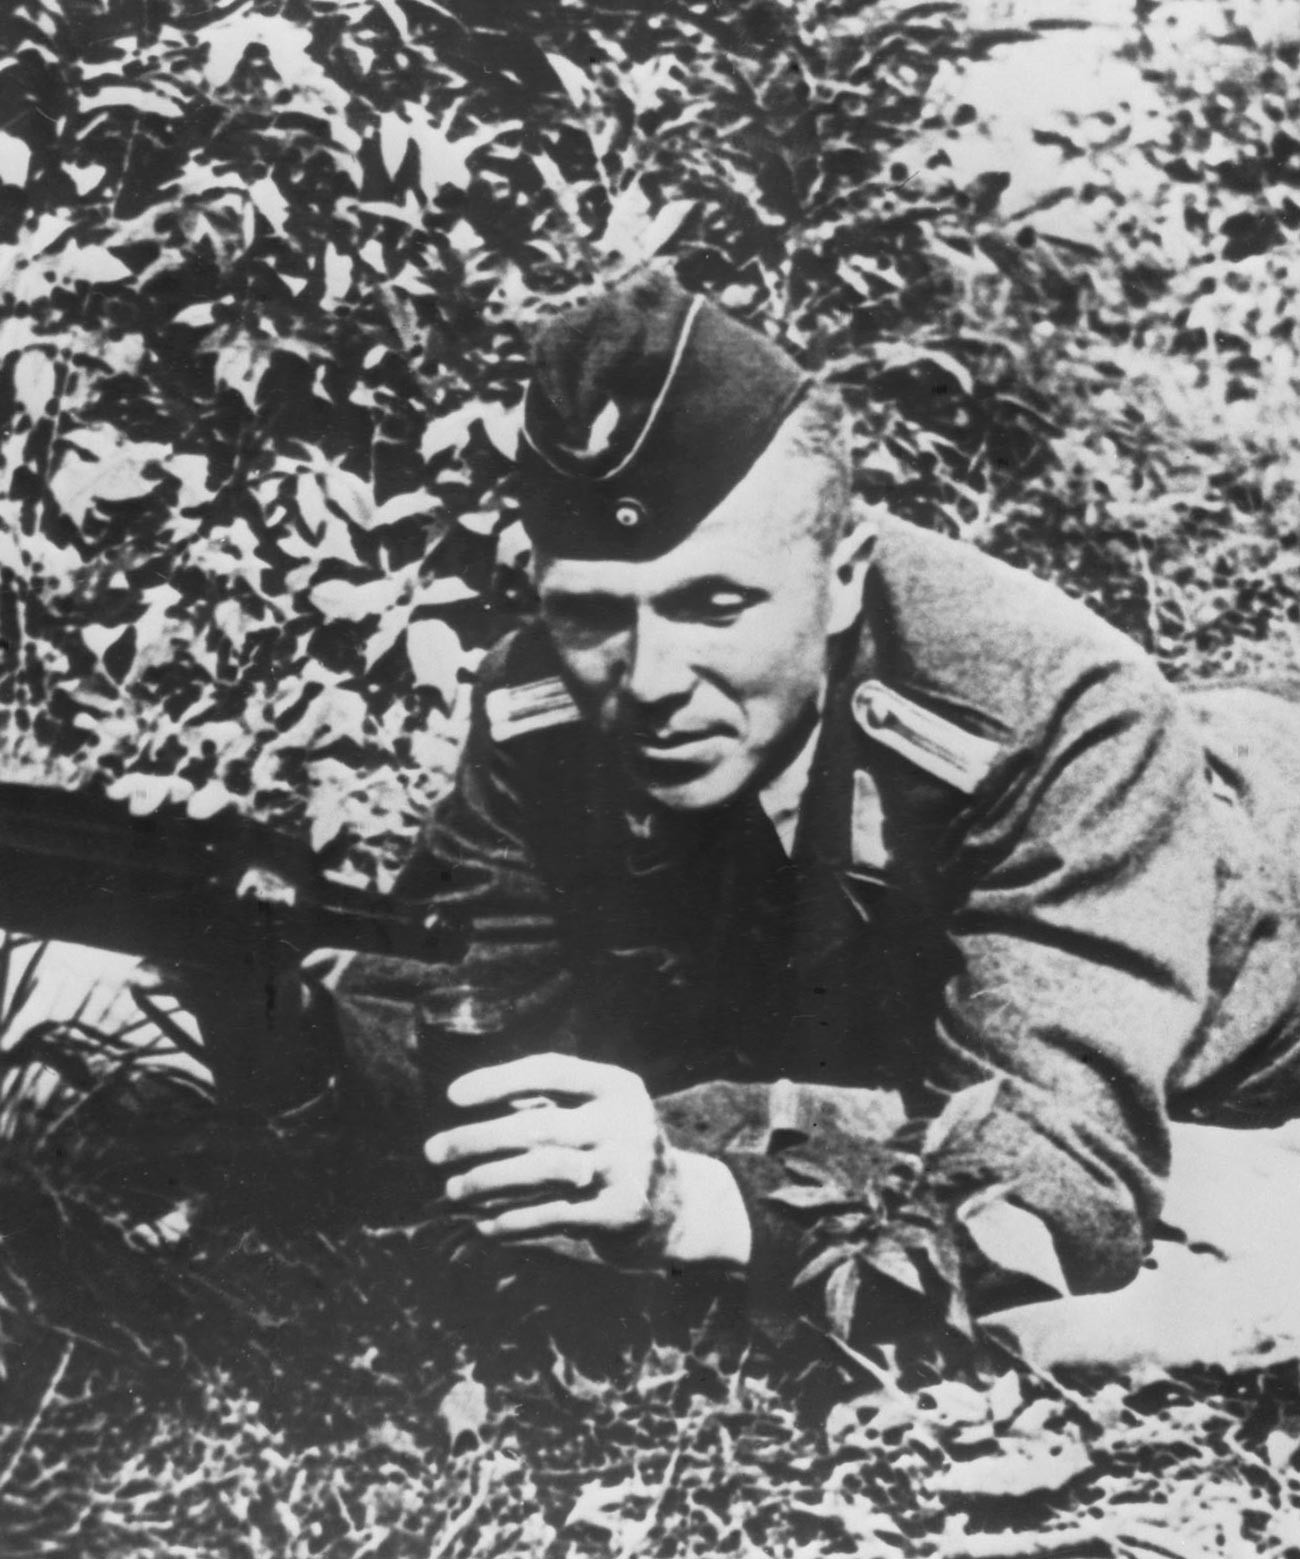 L'esploratore sovietico Nikolaj Kuznetsov con l'uniforme di un ufficiale tedesco